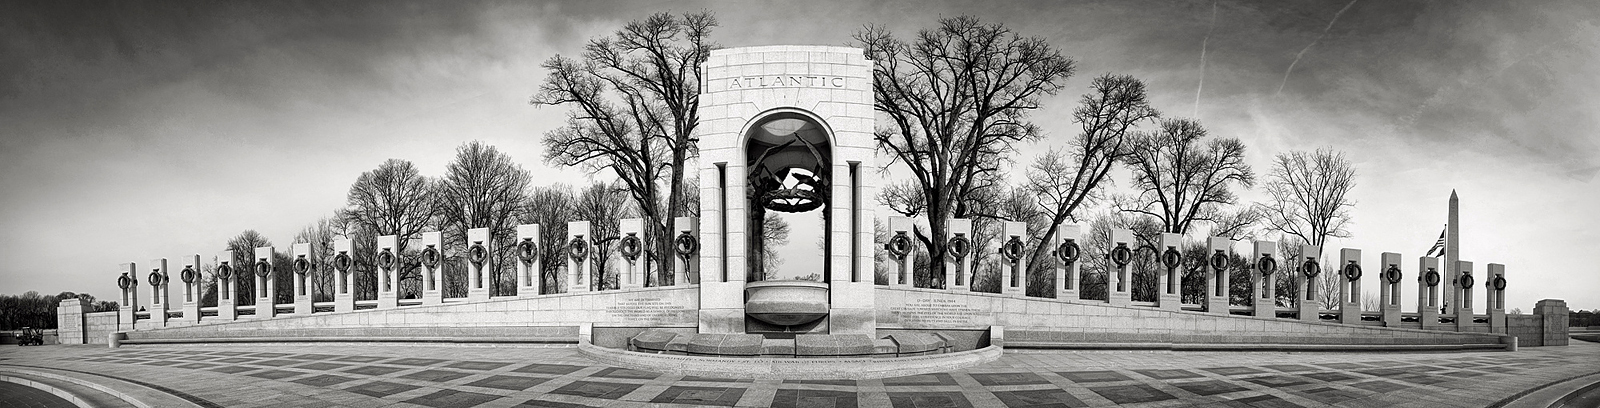 Washington - 2nd world war memorial